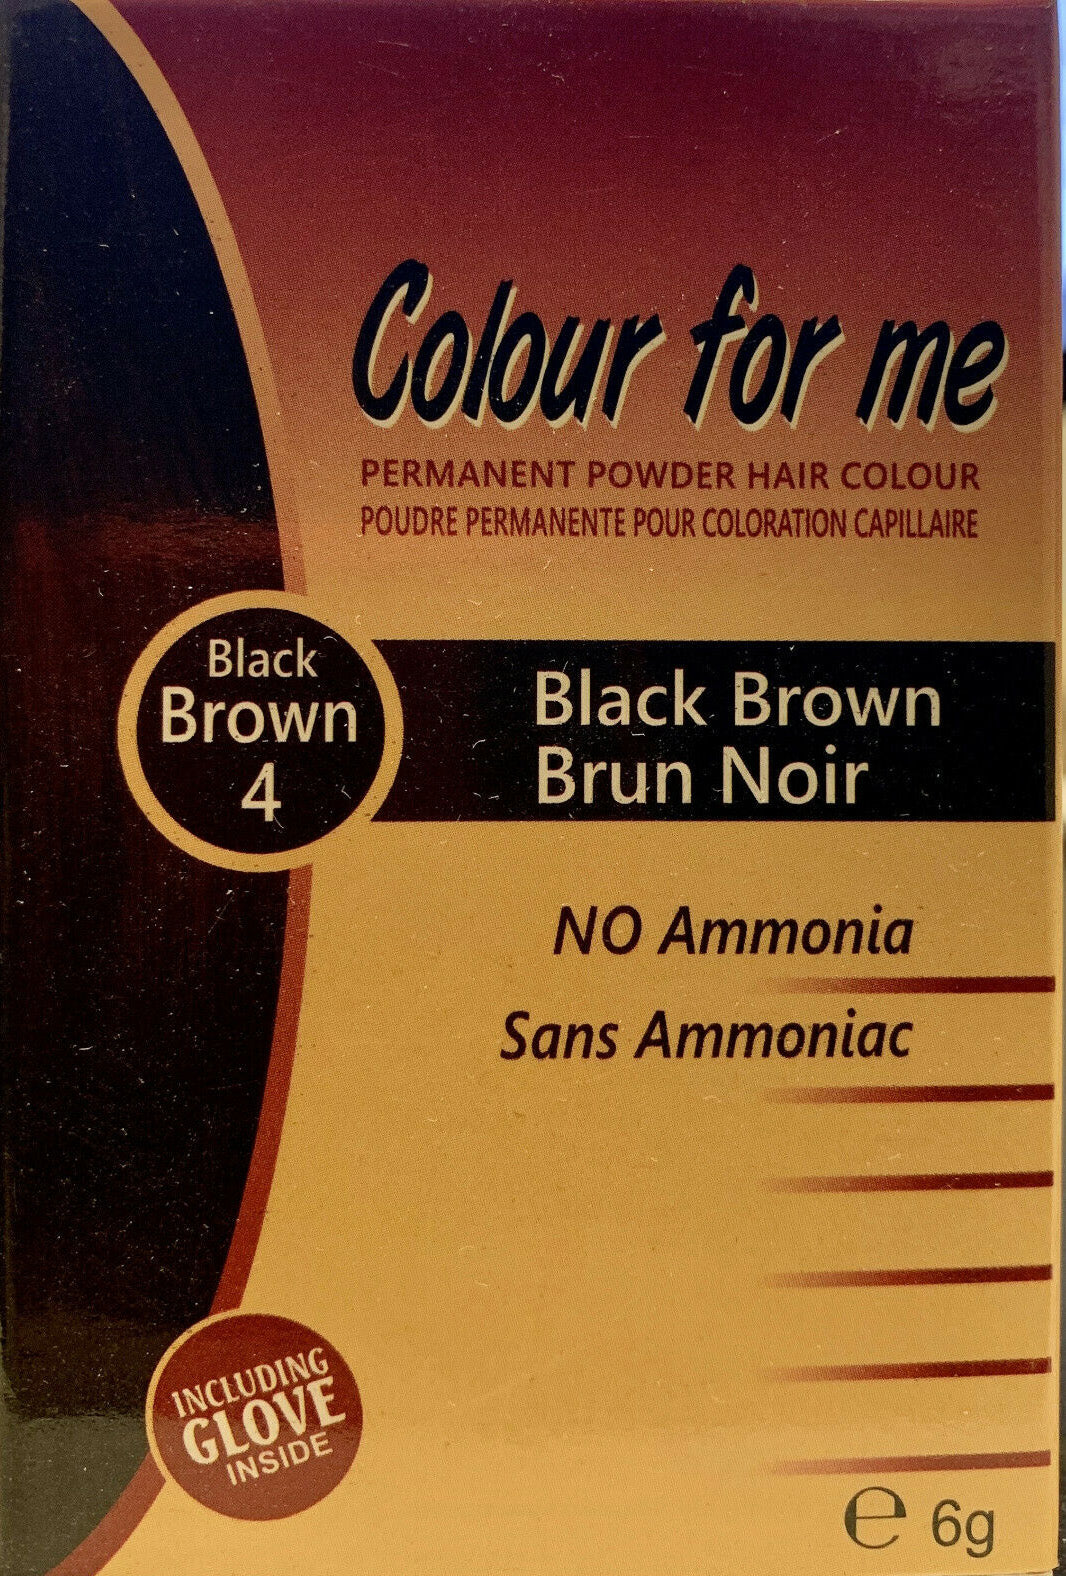 Colour For Me Permanent Powder Hair Colour